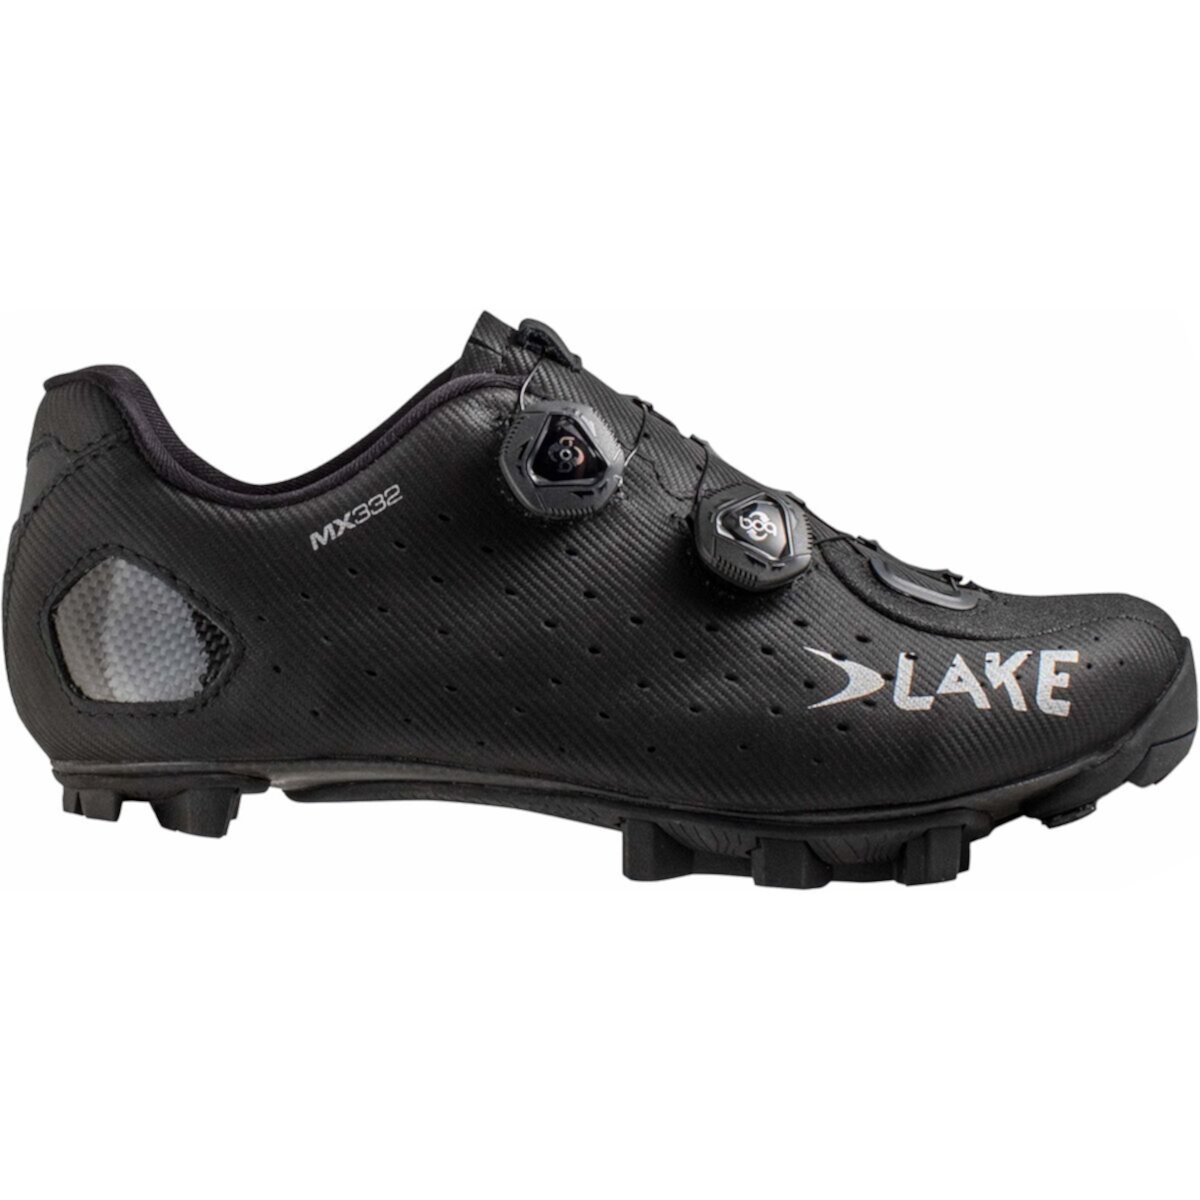 MX332 велосипедная обувь Lake